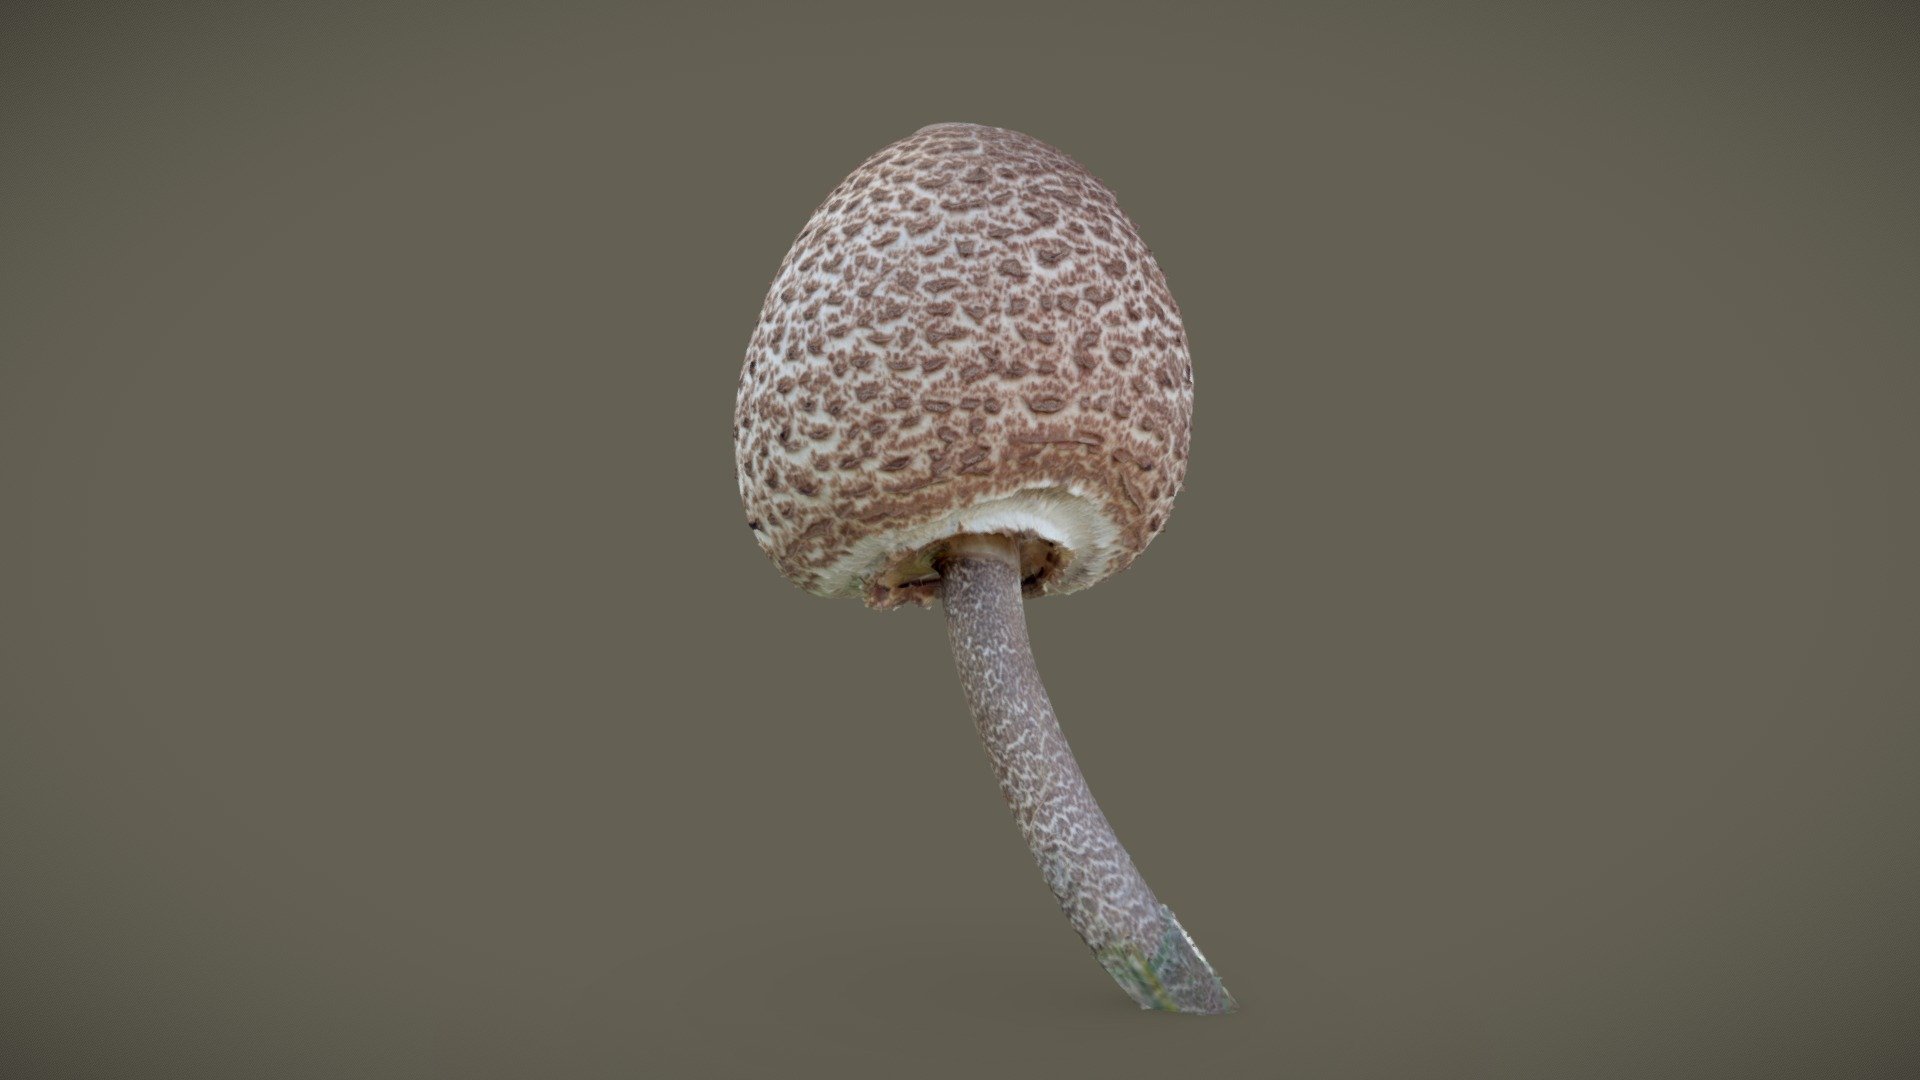 Shaggy Parasol Mushroom (Chlorophyllum rhacodes)